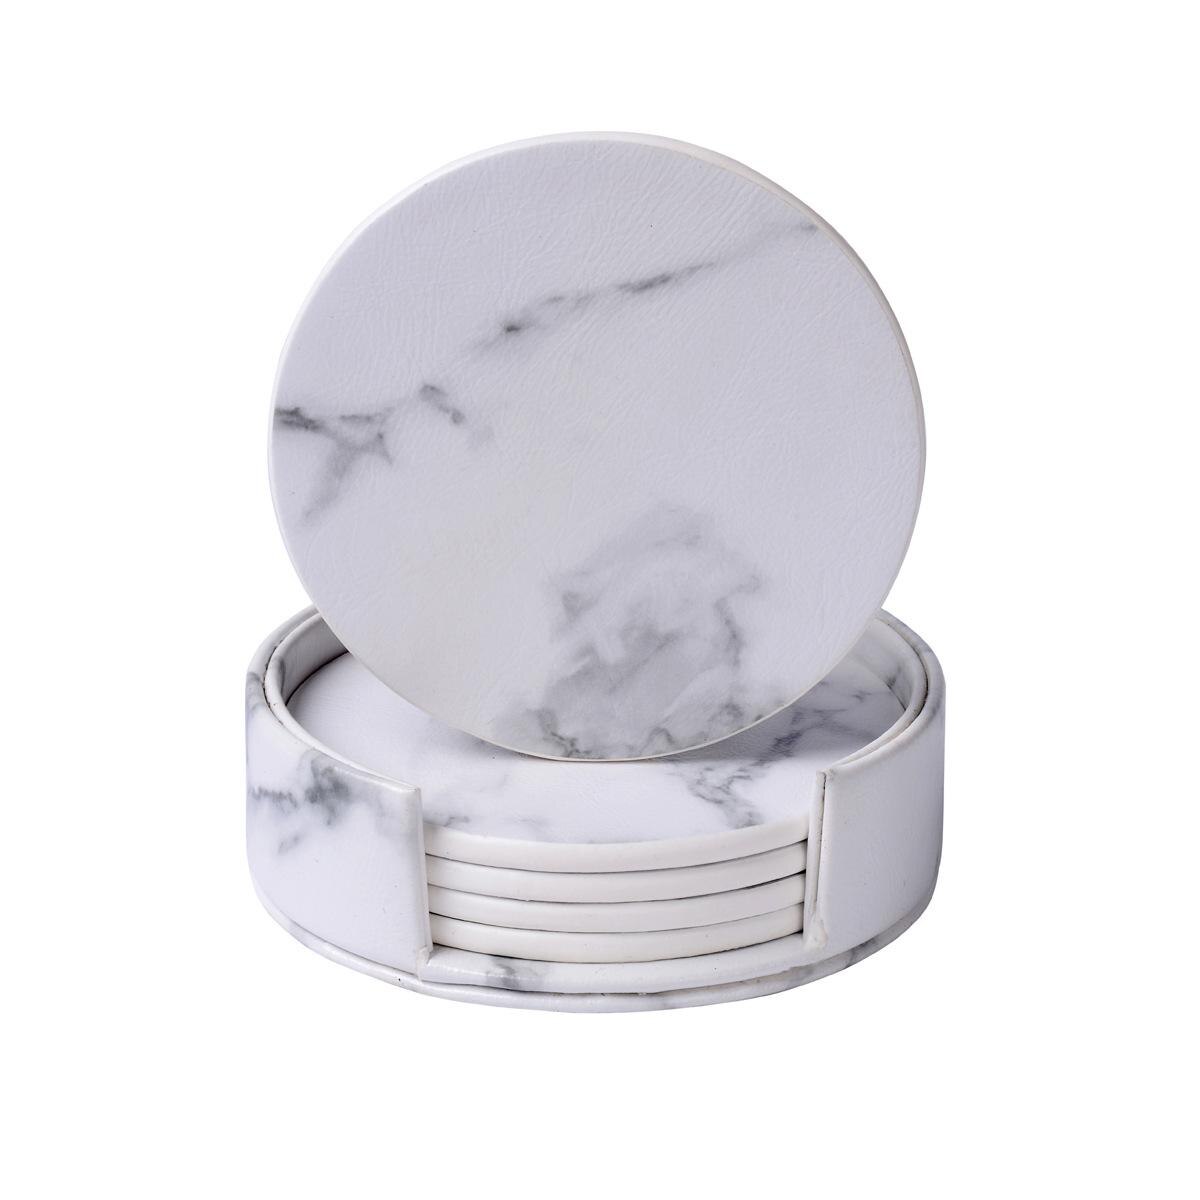 6 stk / sæt marmor pu læder rund firkantet drinkunderlag placemat kop måttepudeholder sort hvid chic dekoration køkkenudstyr: Rund marmor hvid